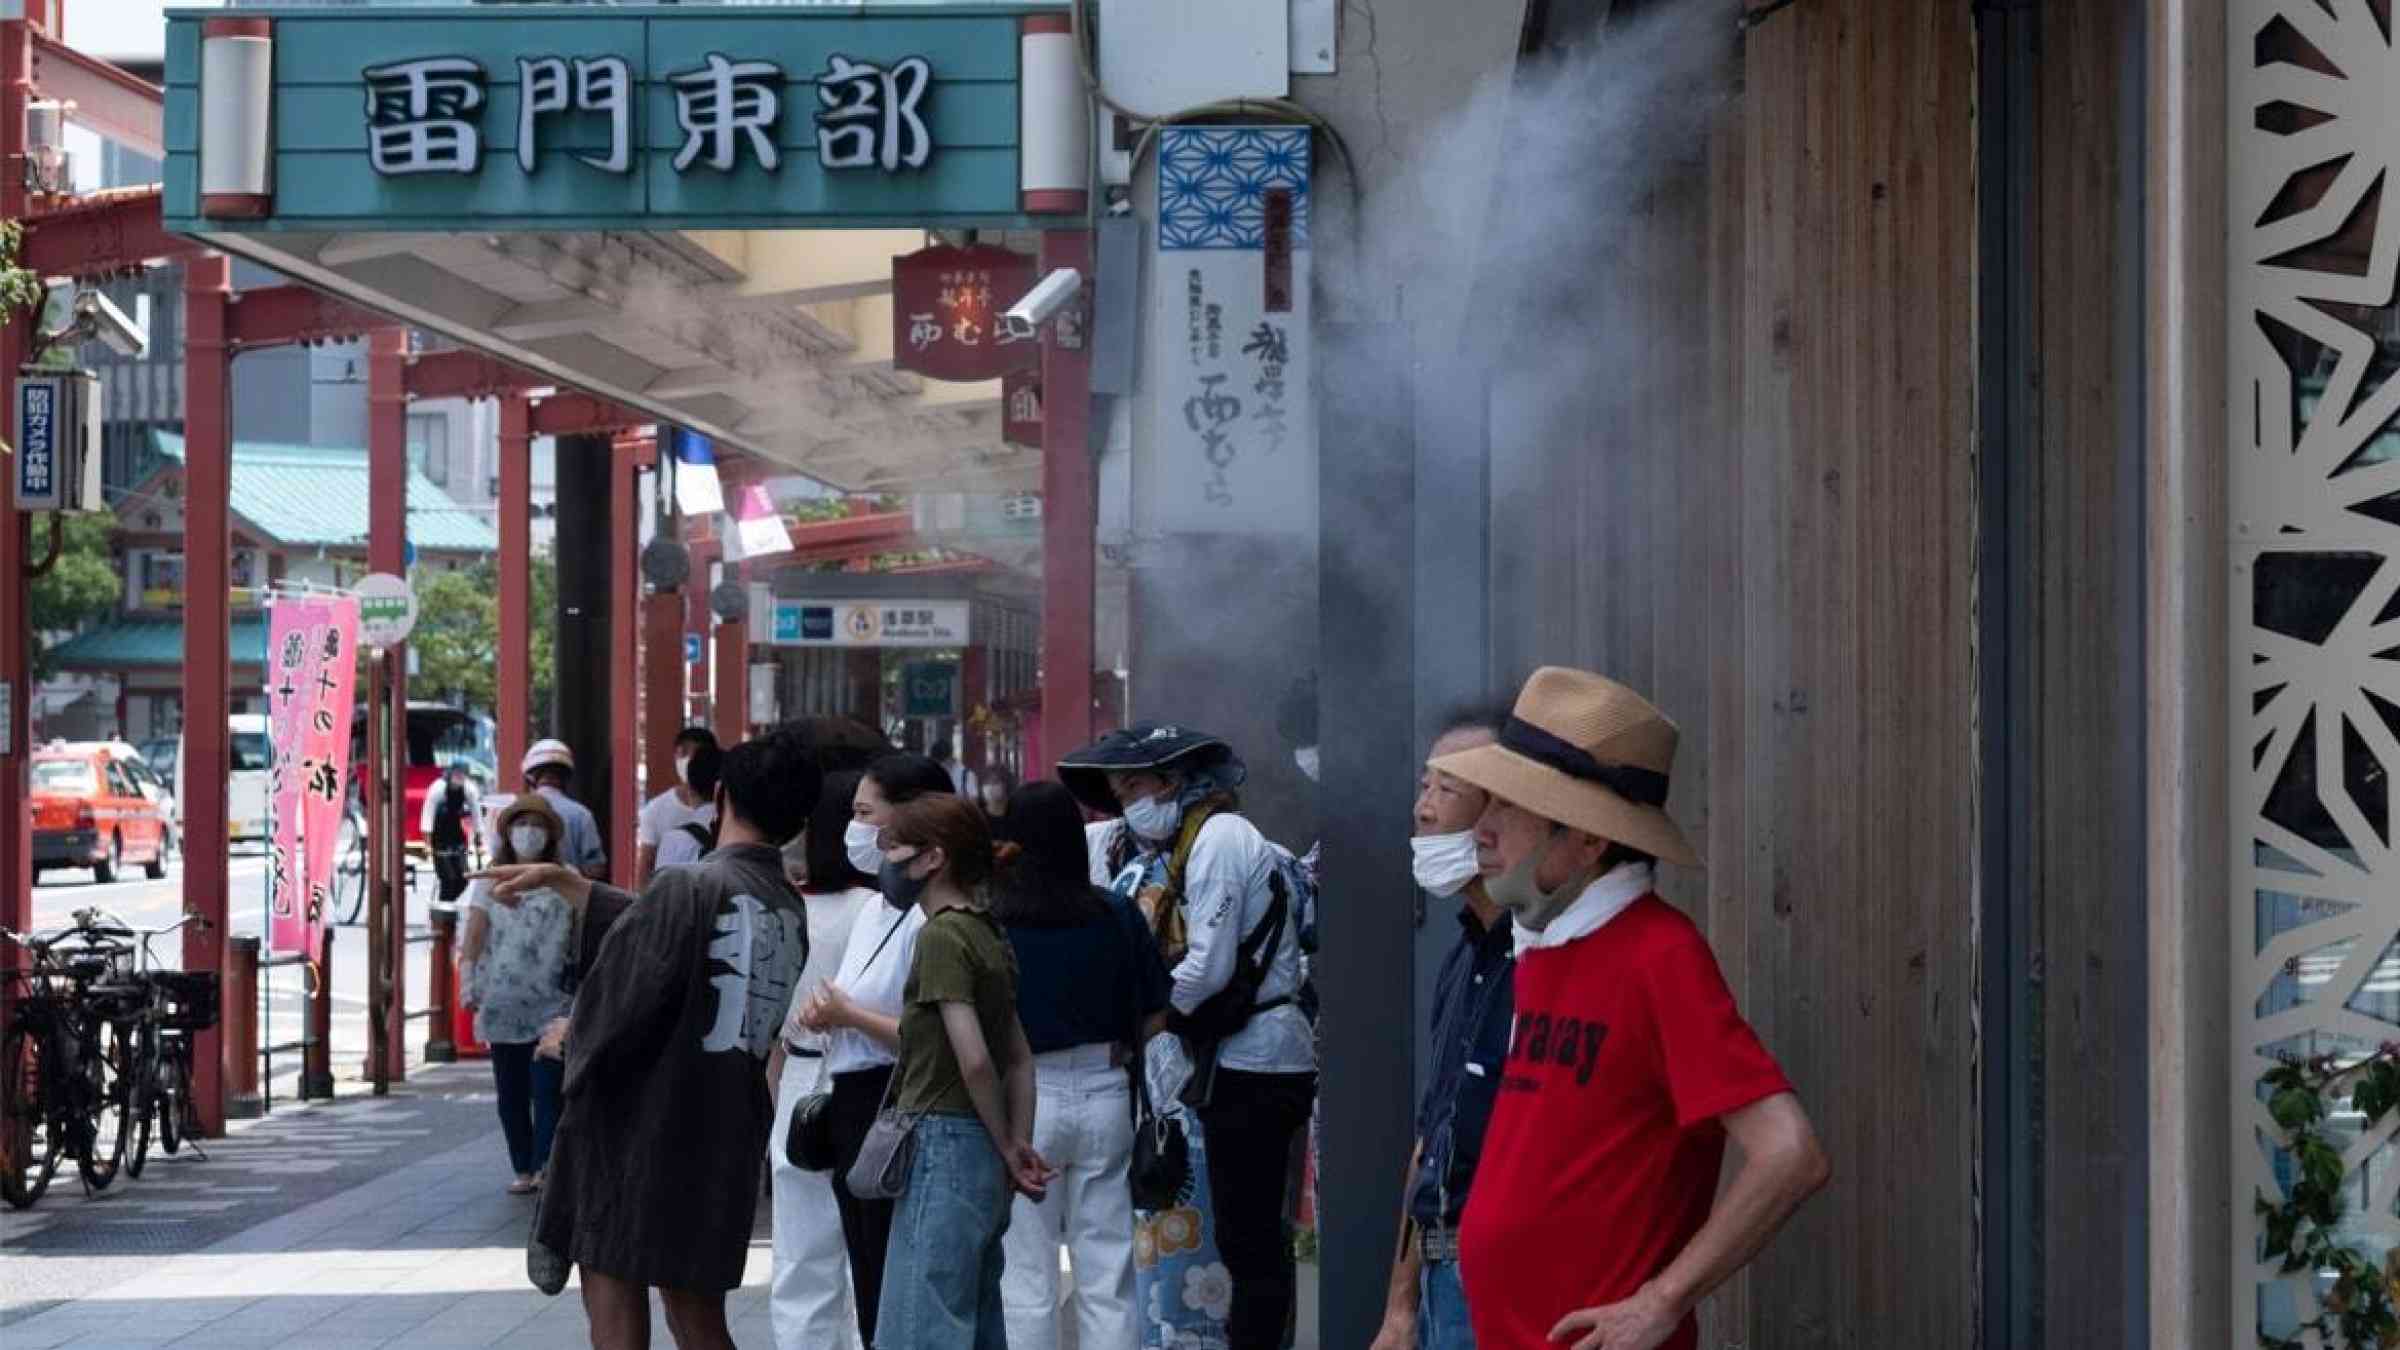 People standing under water mist sprayers in Tokyo, Japan